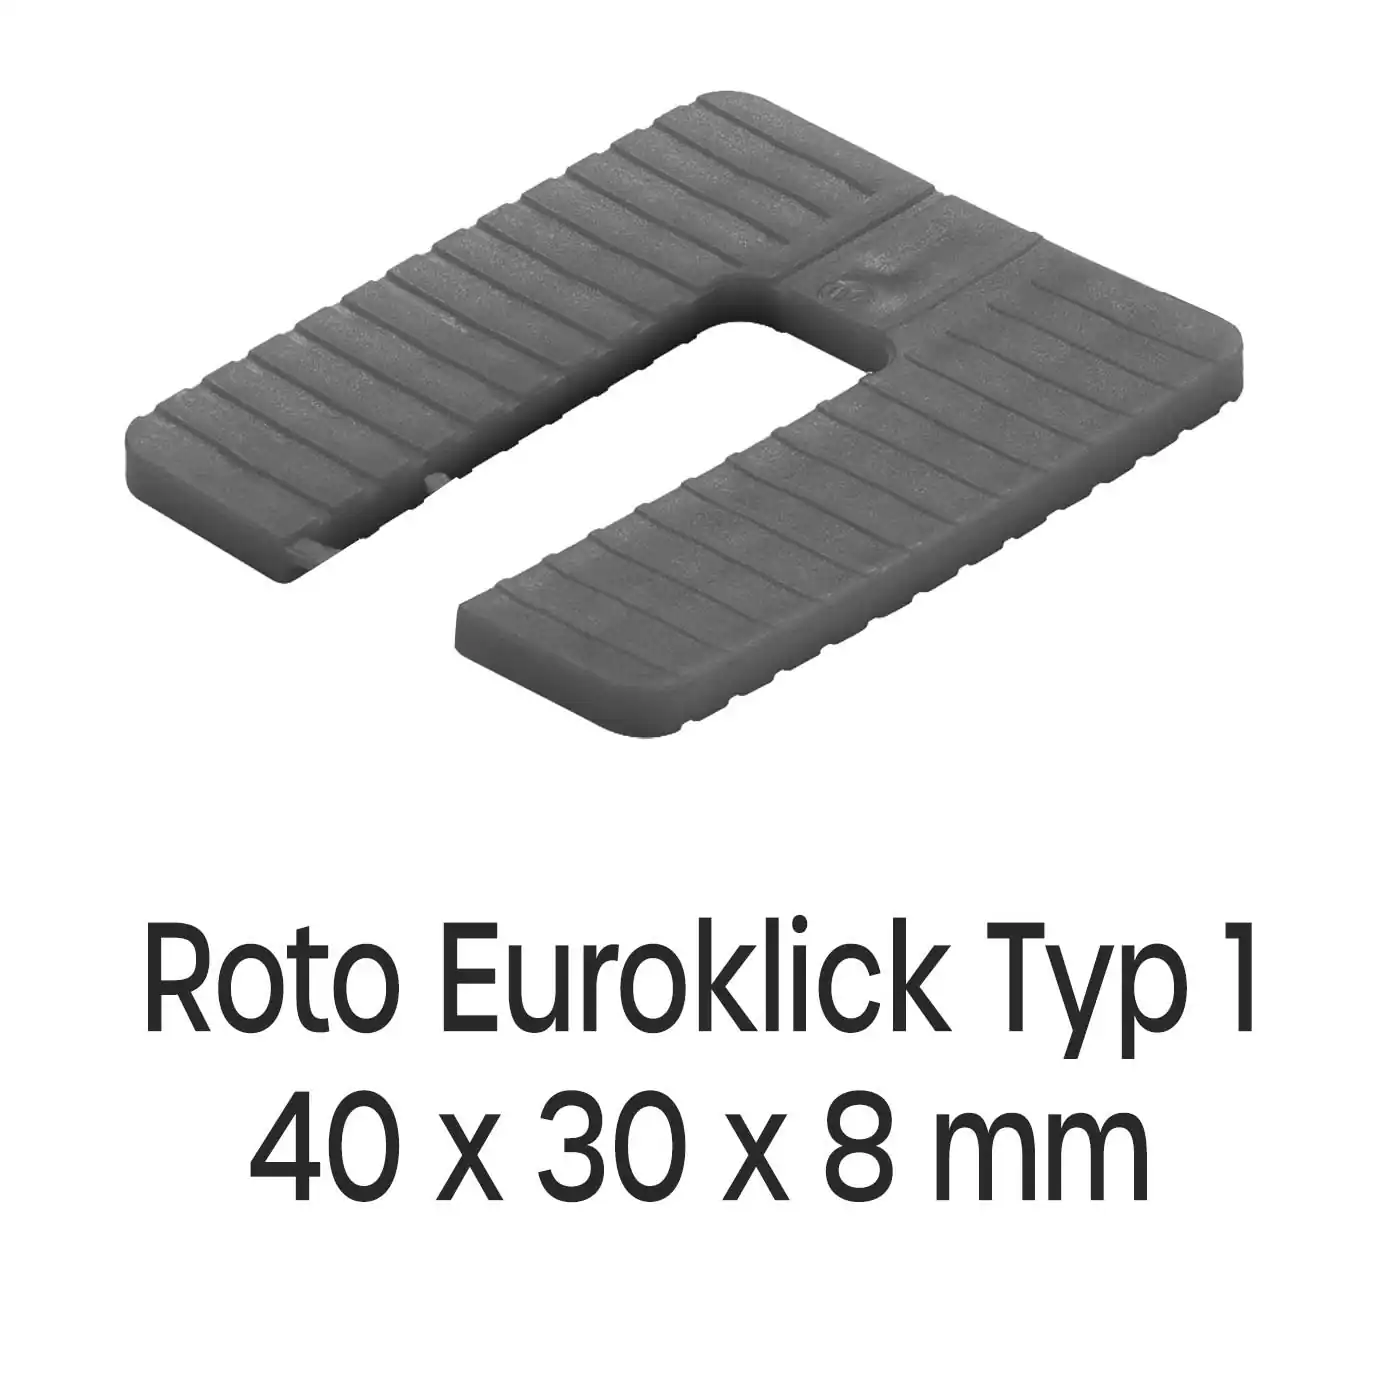 Distanzplatten Roto Euroklick Typ 1 40 x 30 x 8 mm 500 Stück